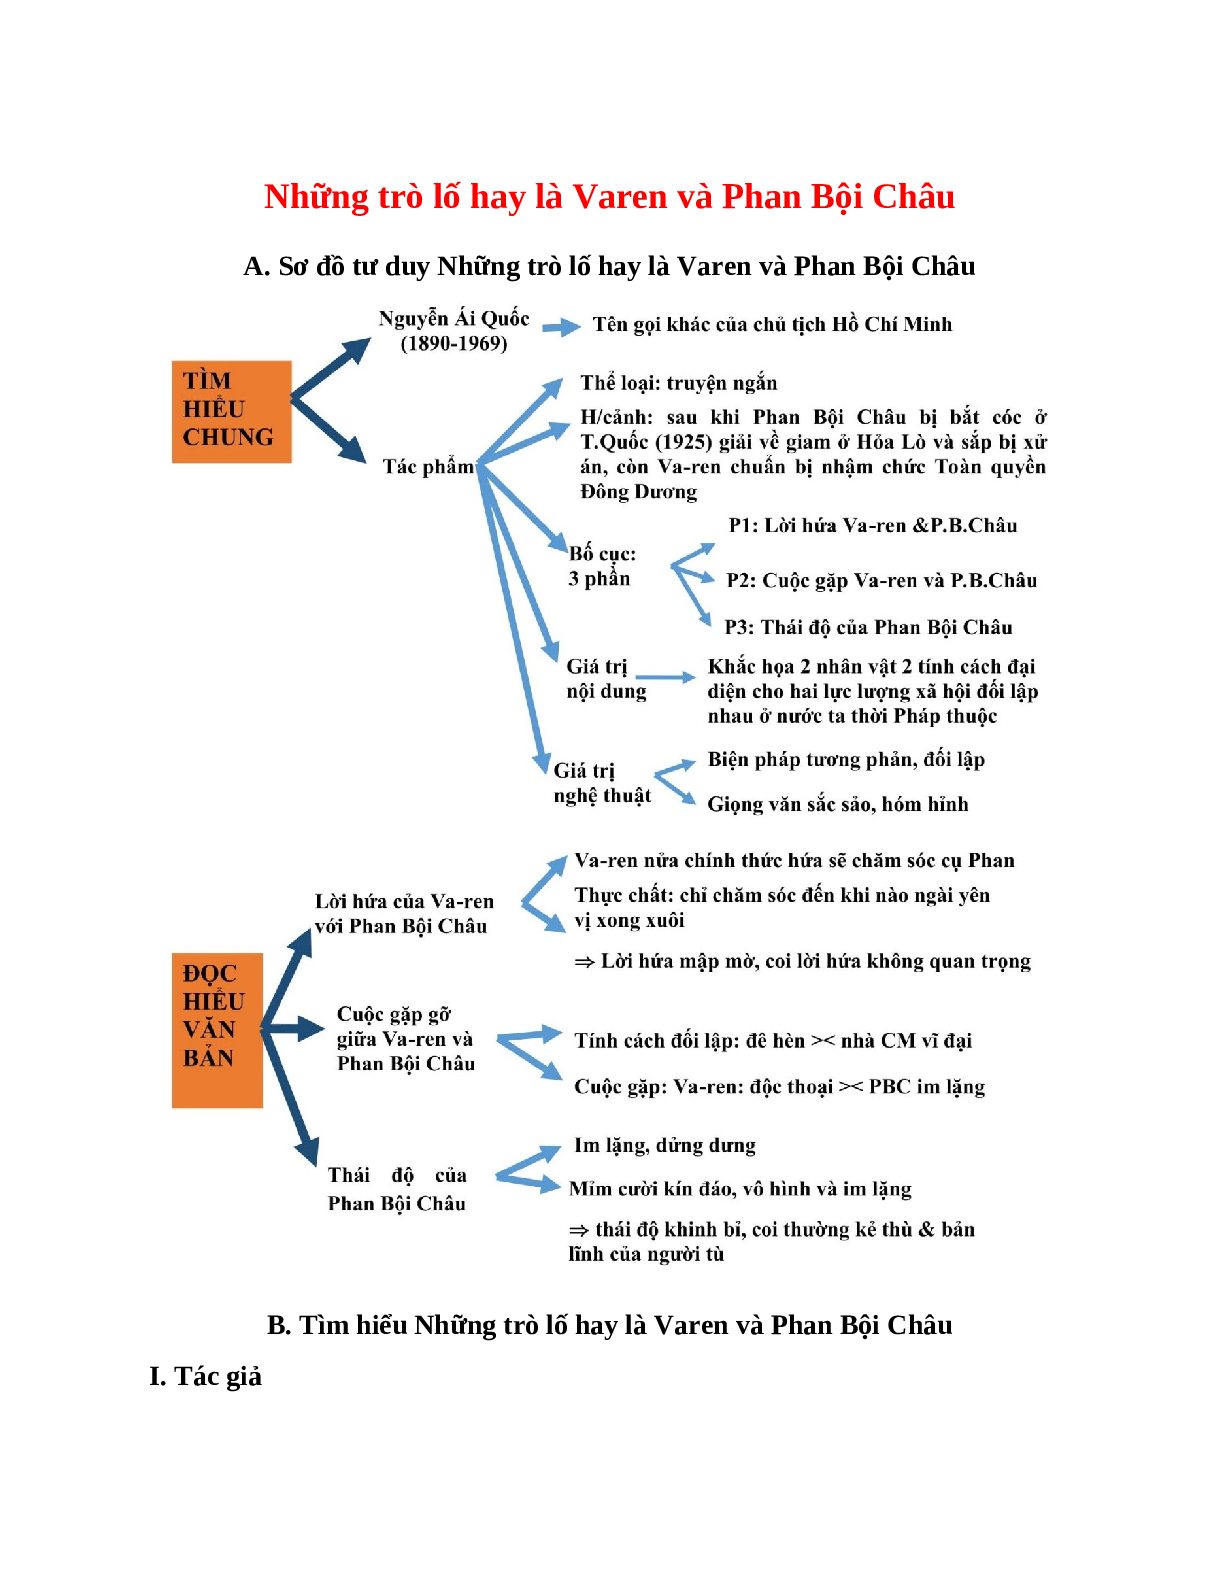 Sơ đồ tư duy bài Những trò lố hay là Varen và Phan Bội Châu dễ nhớ, ngắn nhất - Ngữ văn lớp 7 (trang 1)